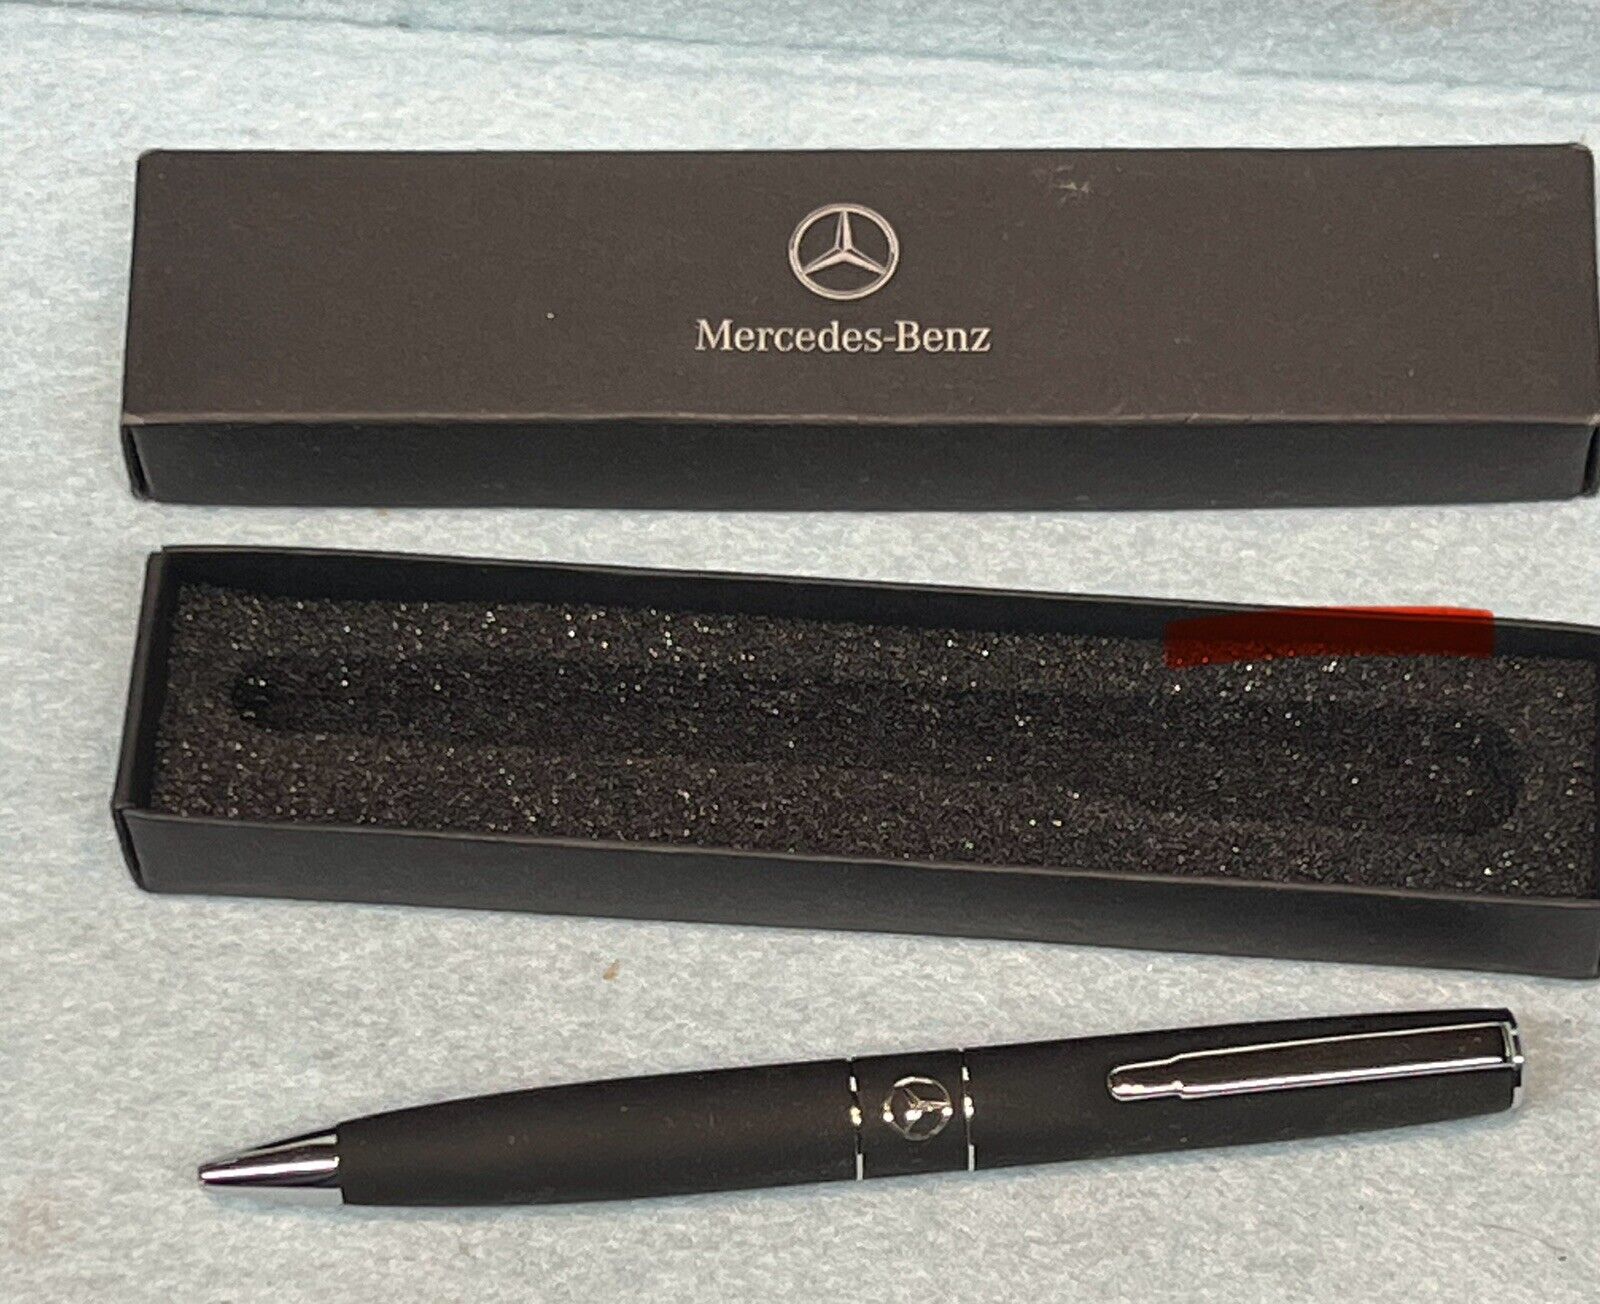 Mercedes Benz Pen Unused In Original Box